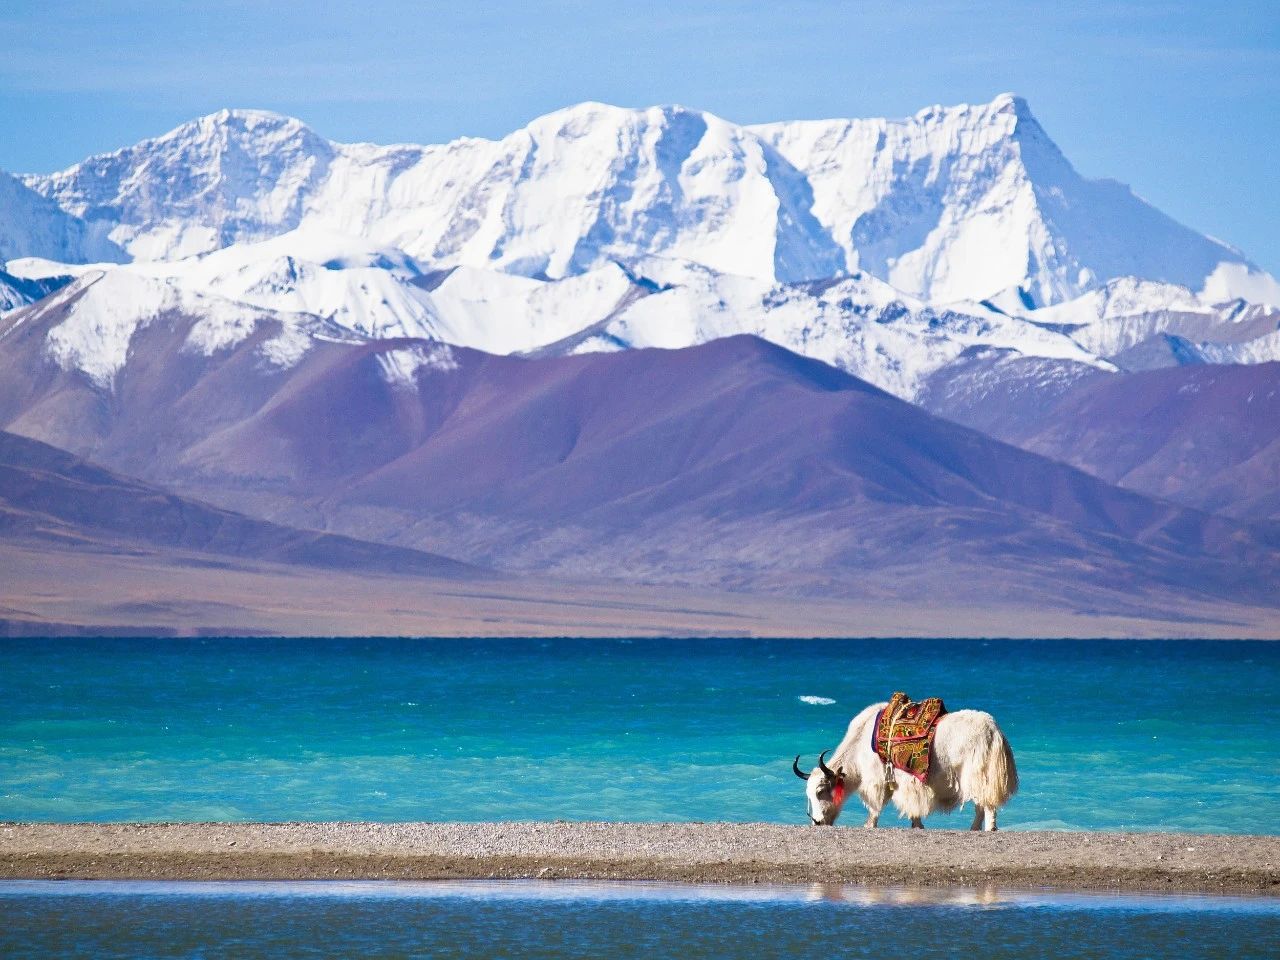 【携程攻略】贡嘎羊卓雍措景点,美哭了。羊湖作为西藏三大圣湖之一，藏语意为“碧玉湖”、“天鹅池”…